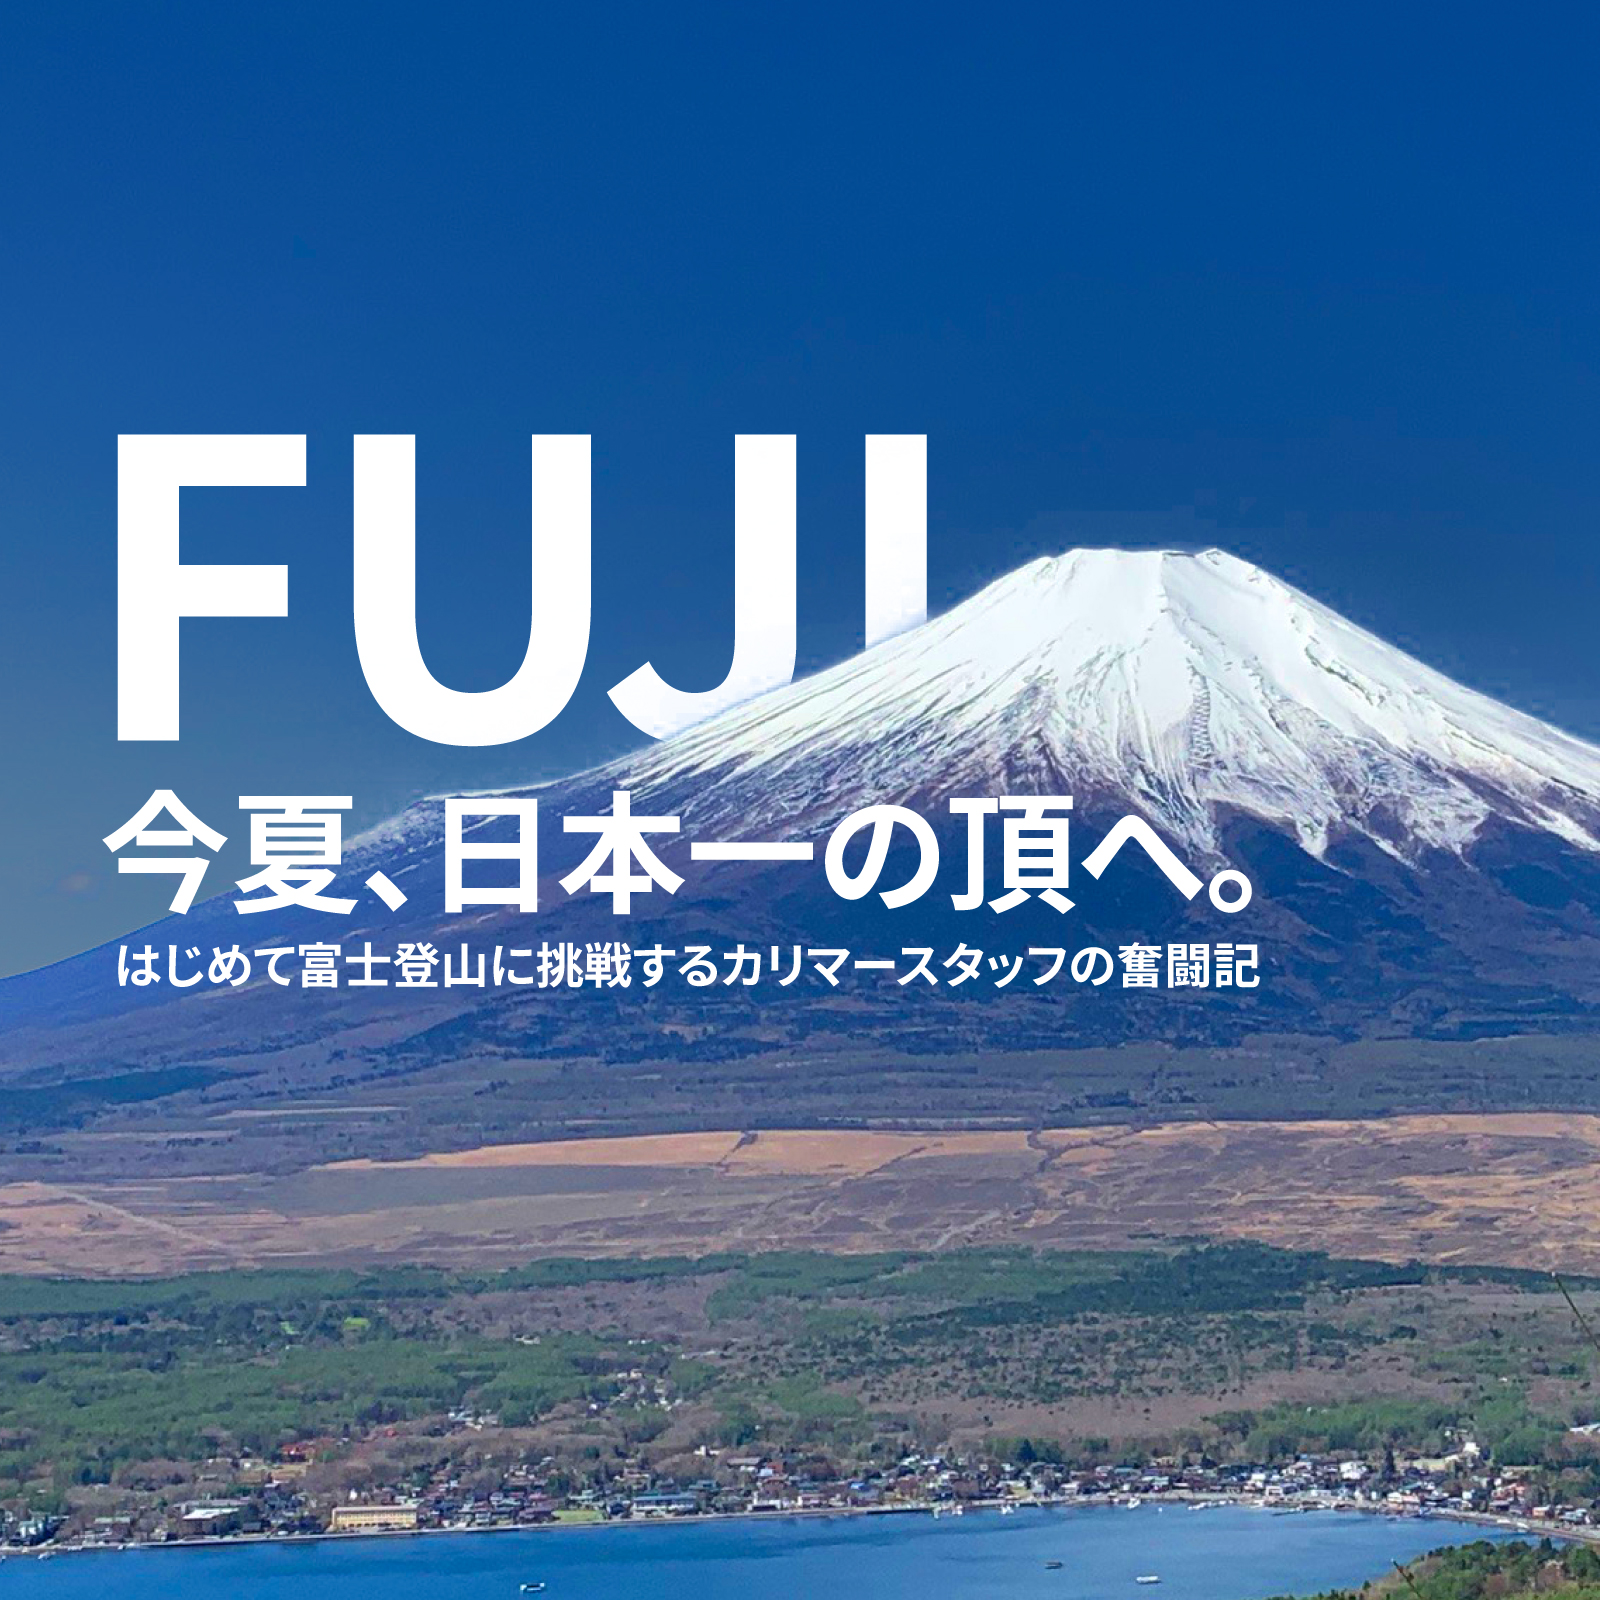 [特別企画]富士登山プロジェクト